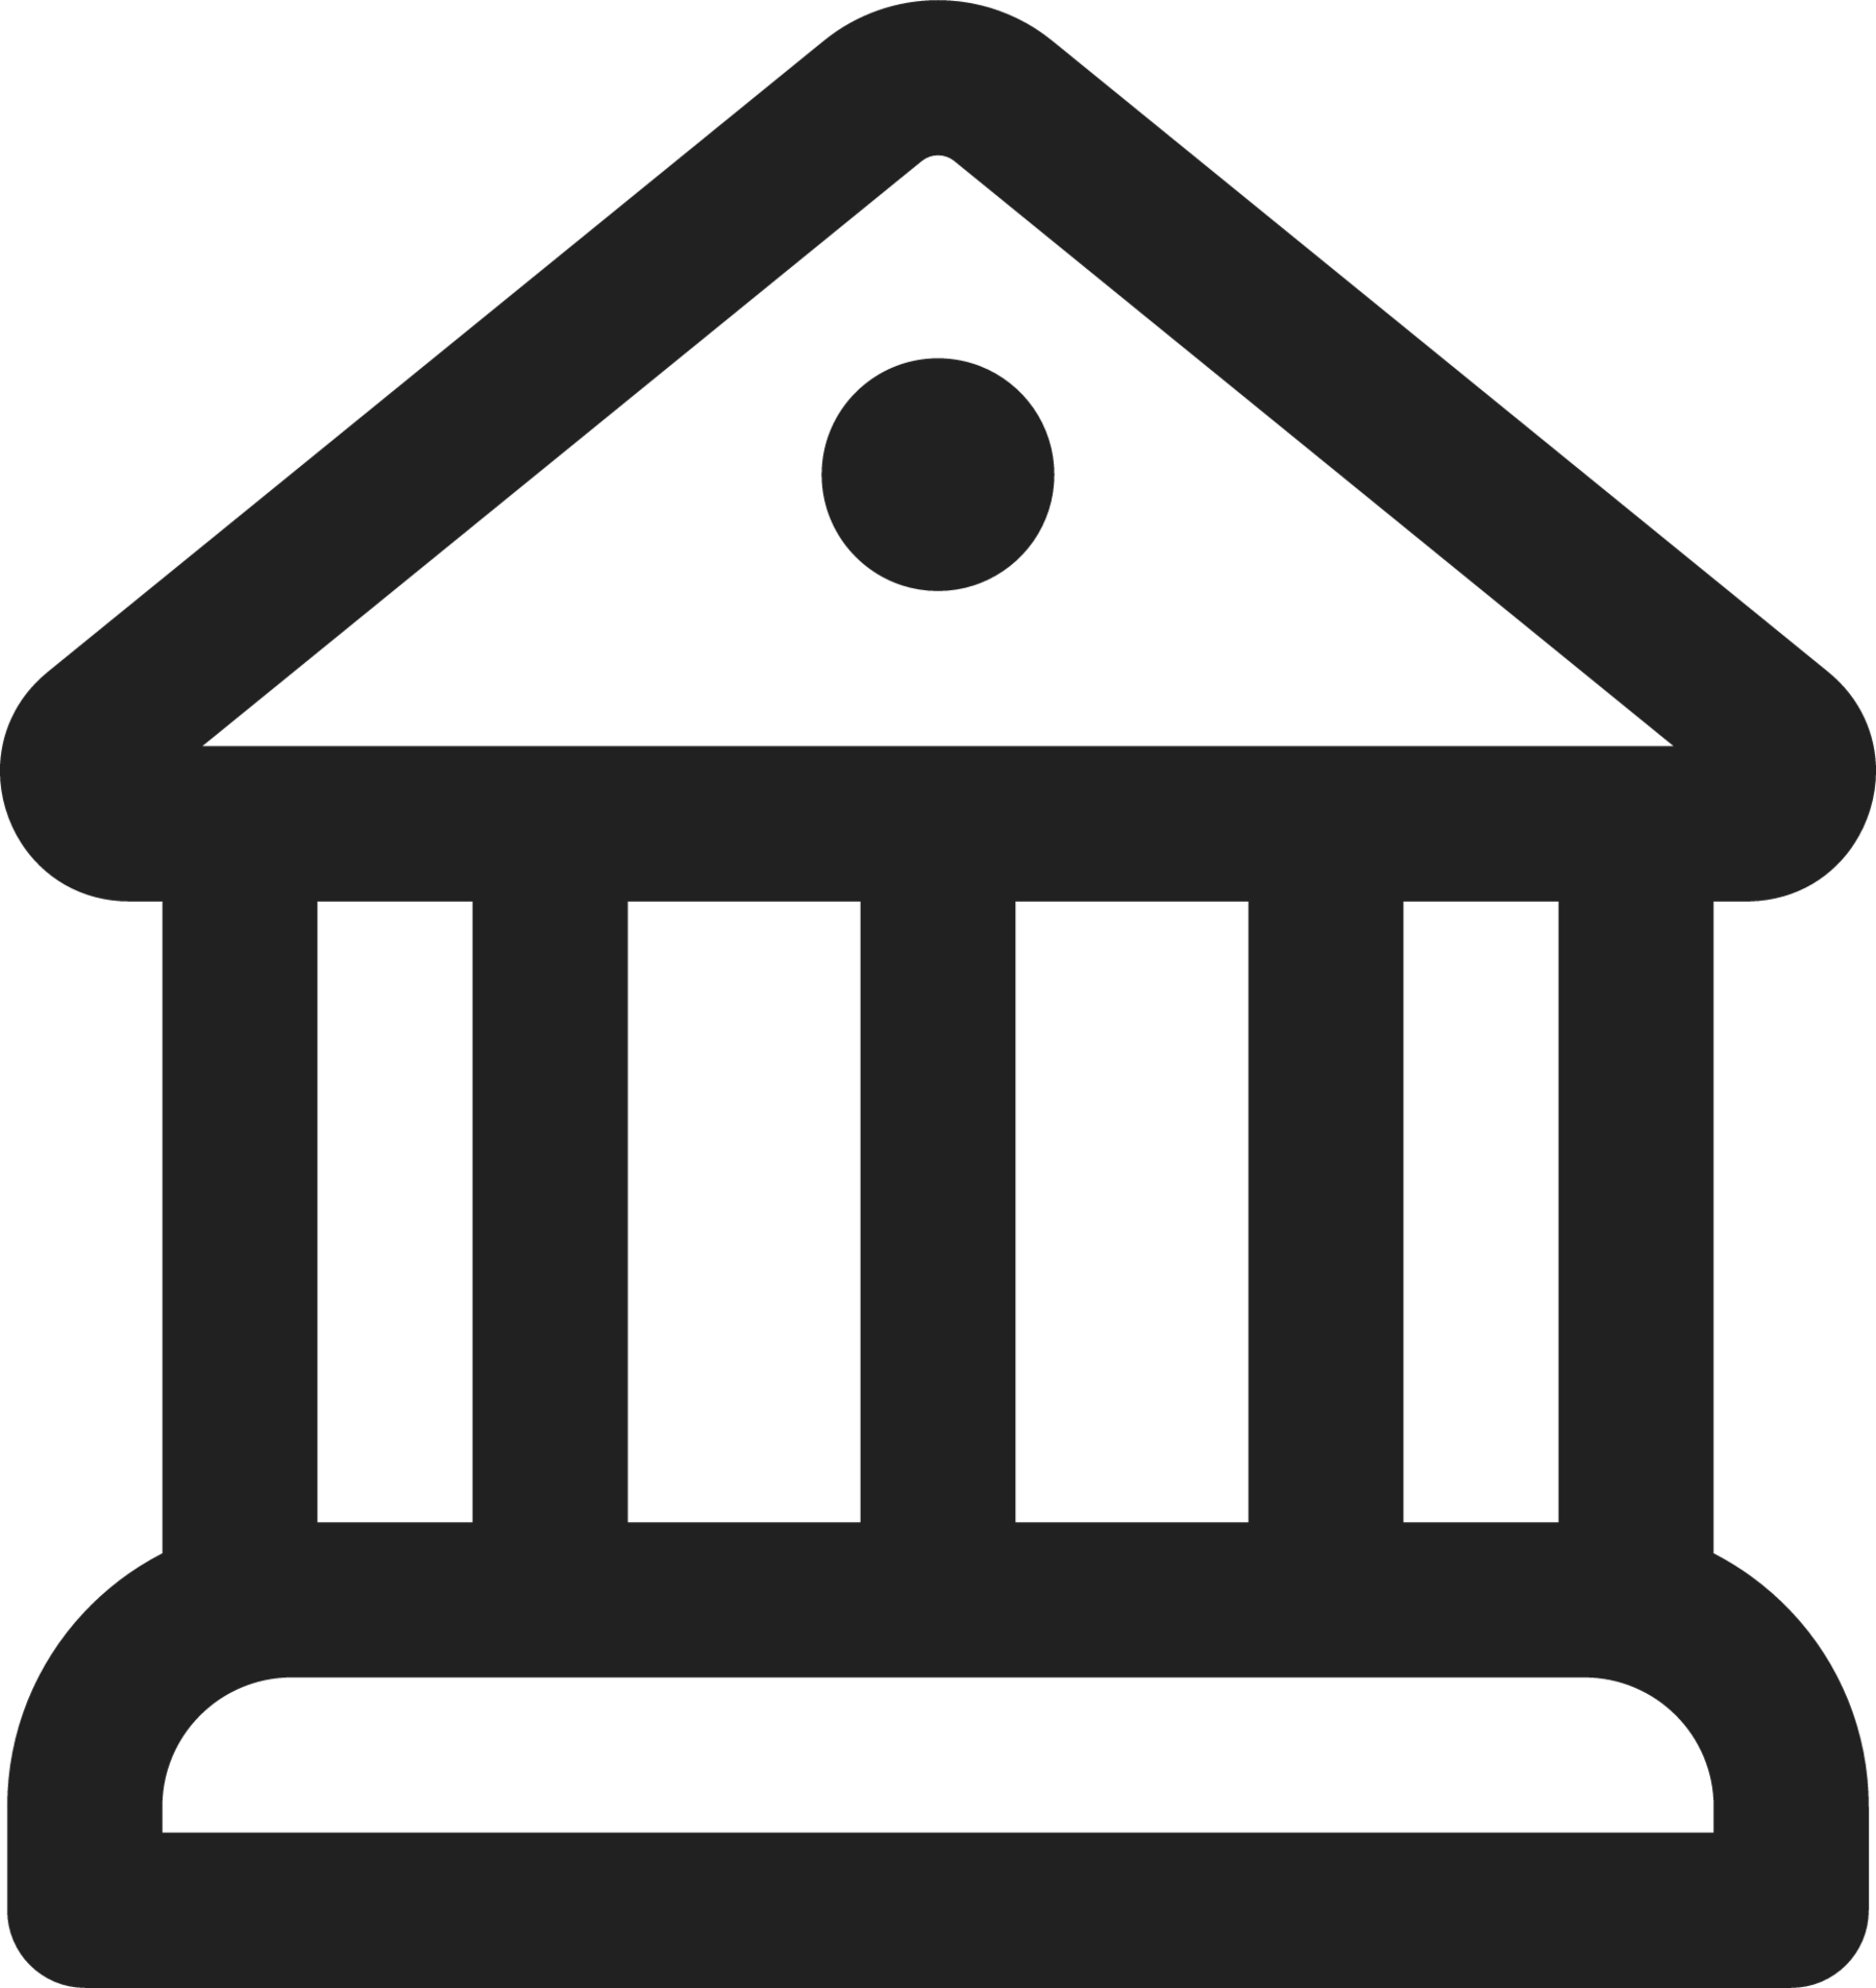 Building Bank icon